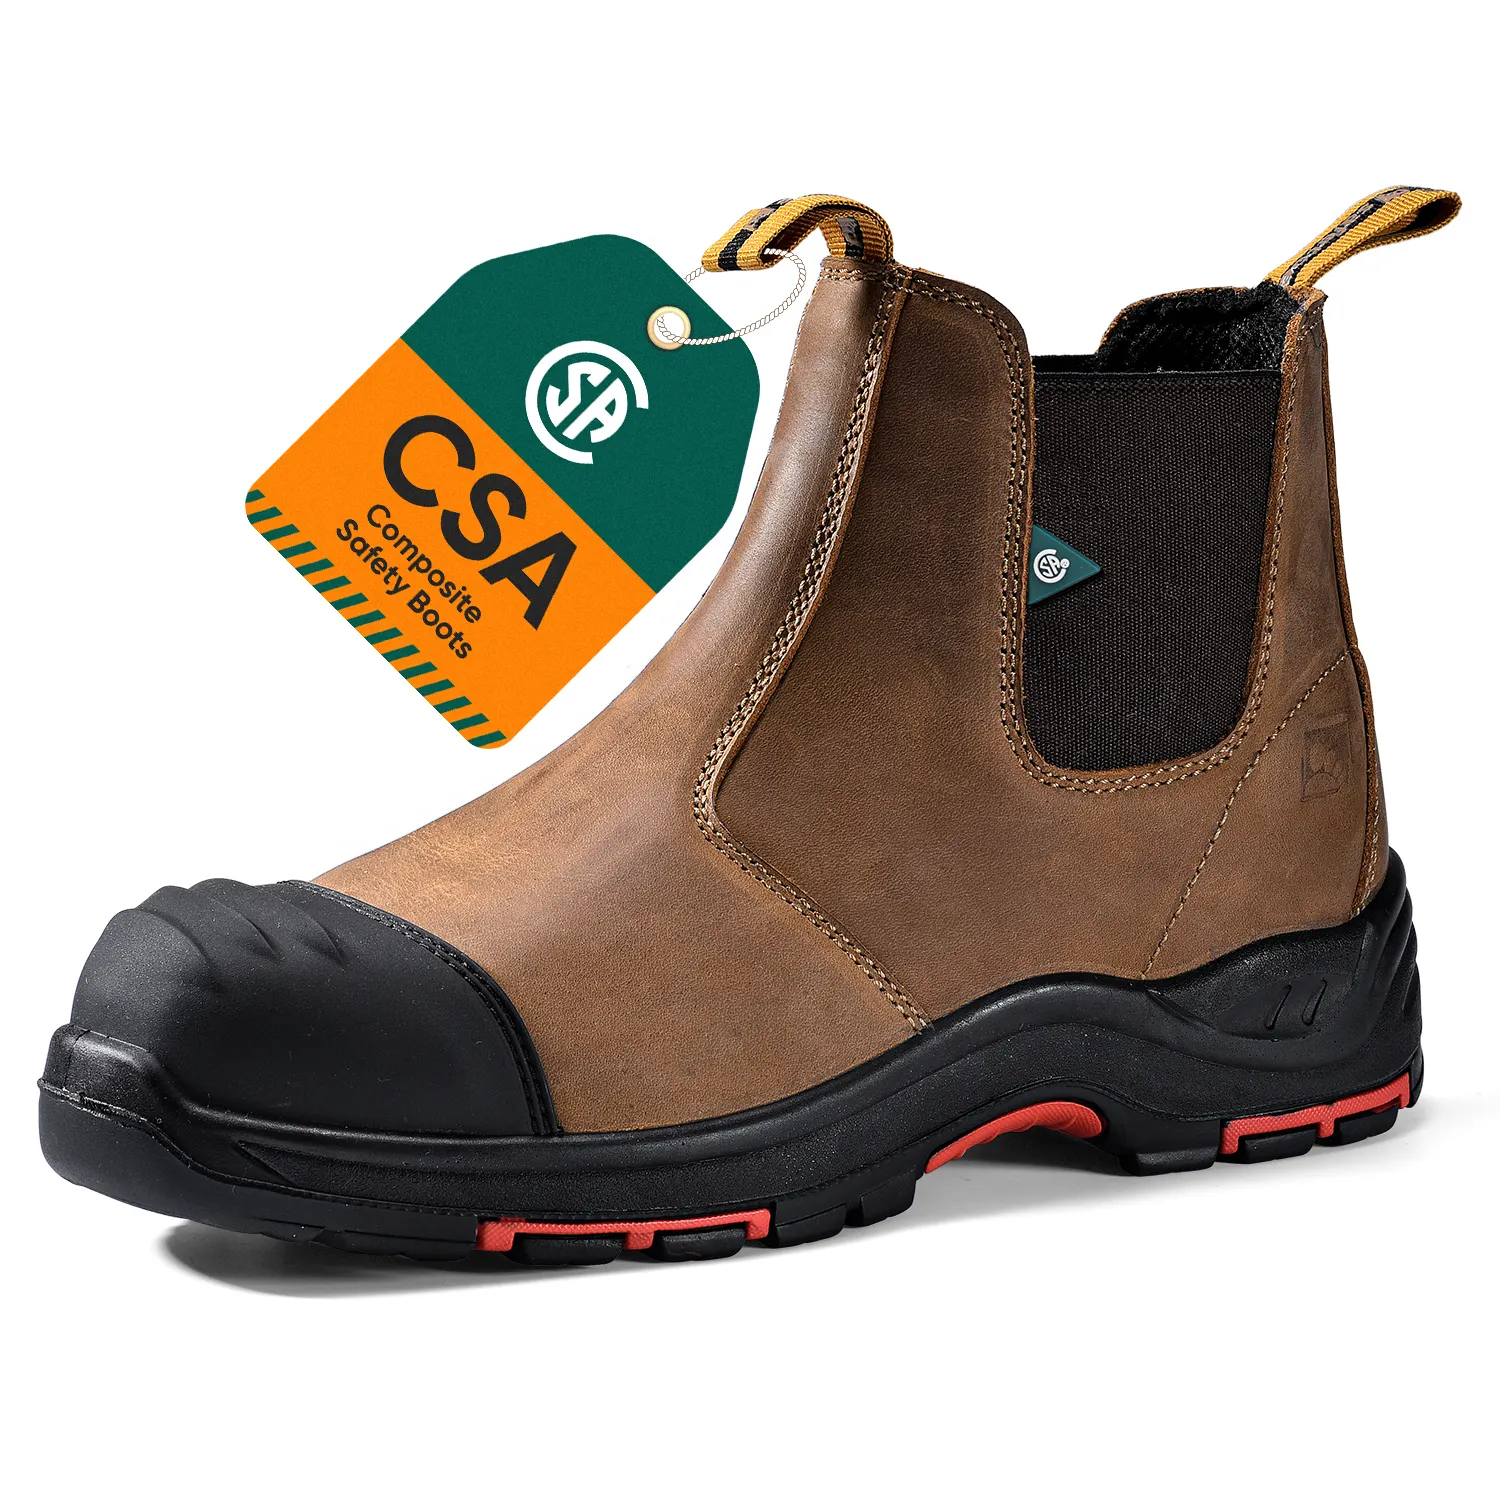 Safetoe-zapatos de seguridad de cuero a prueba de agua para hombre, botas industriales con punta de plástico compuesto, calidad Tuff